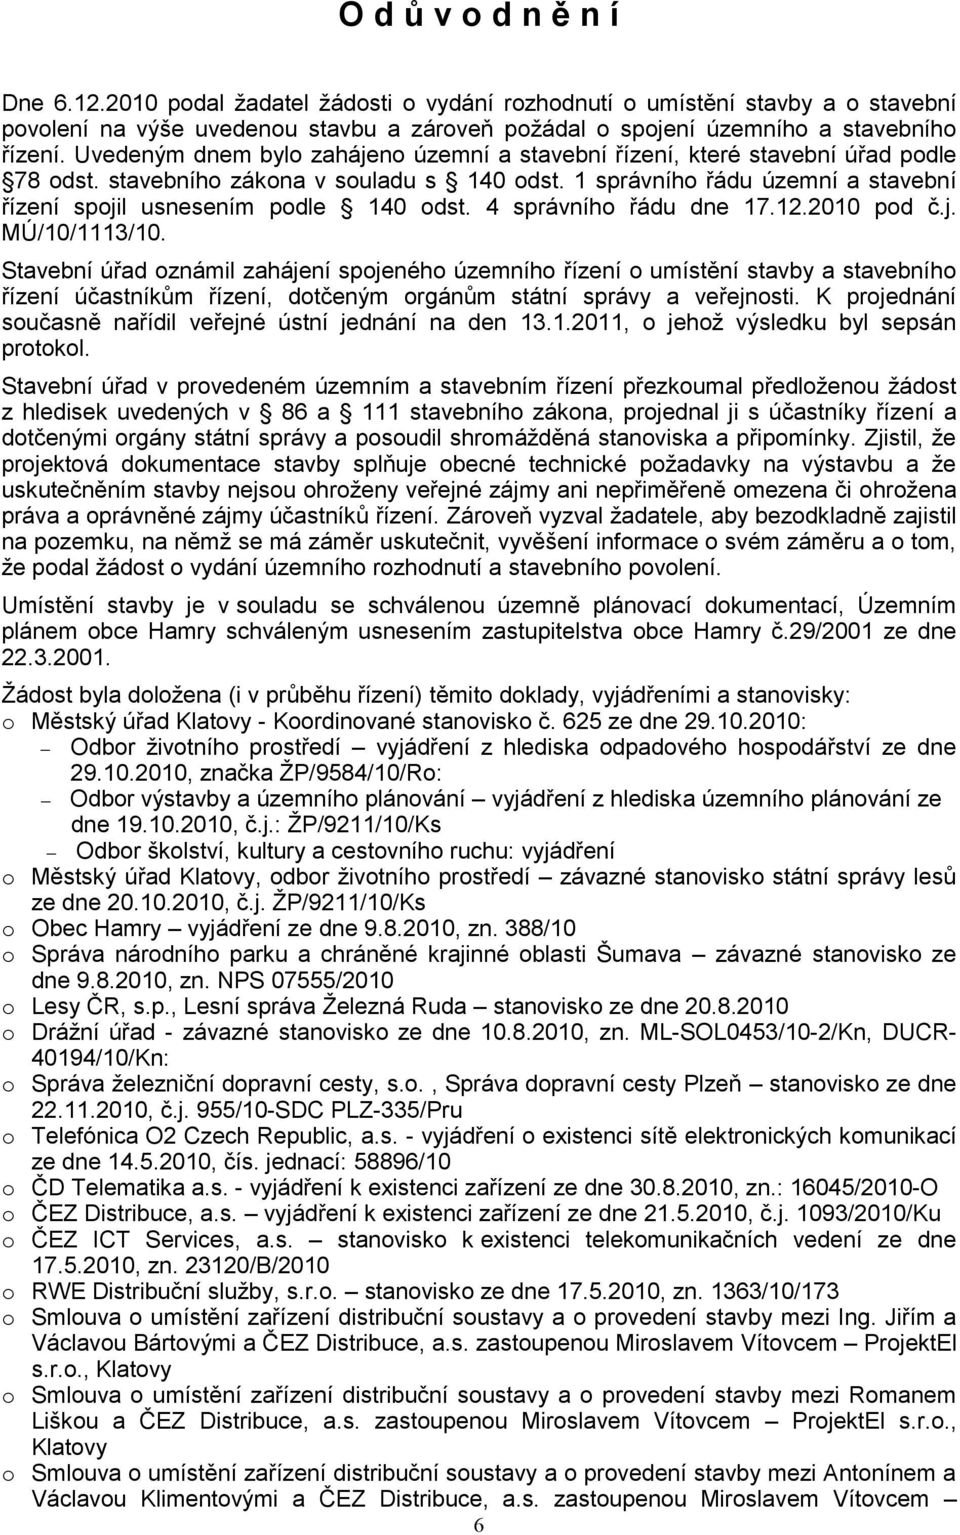 1 správního řádu územní a stavební řízení spojil usnesením podle 140 odst. 4 správního řádu dne 17.12.2010 pod č.j. MÚ/10/1113/10.